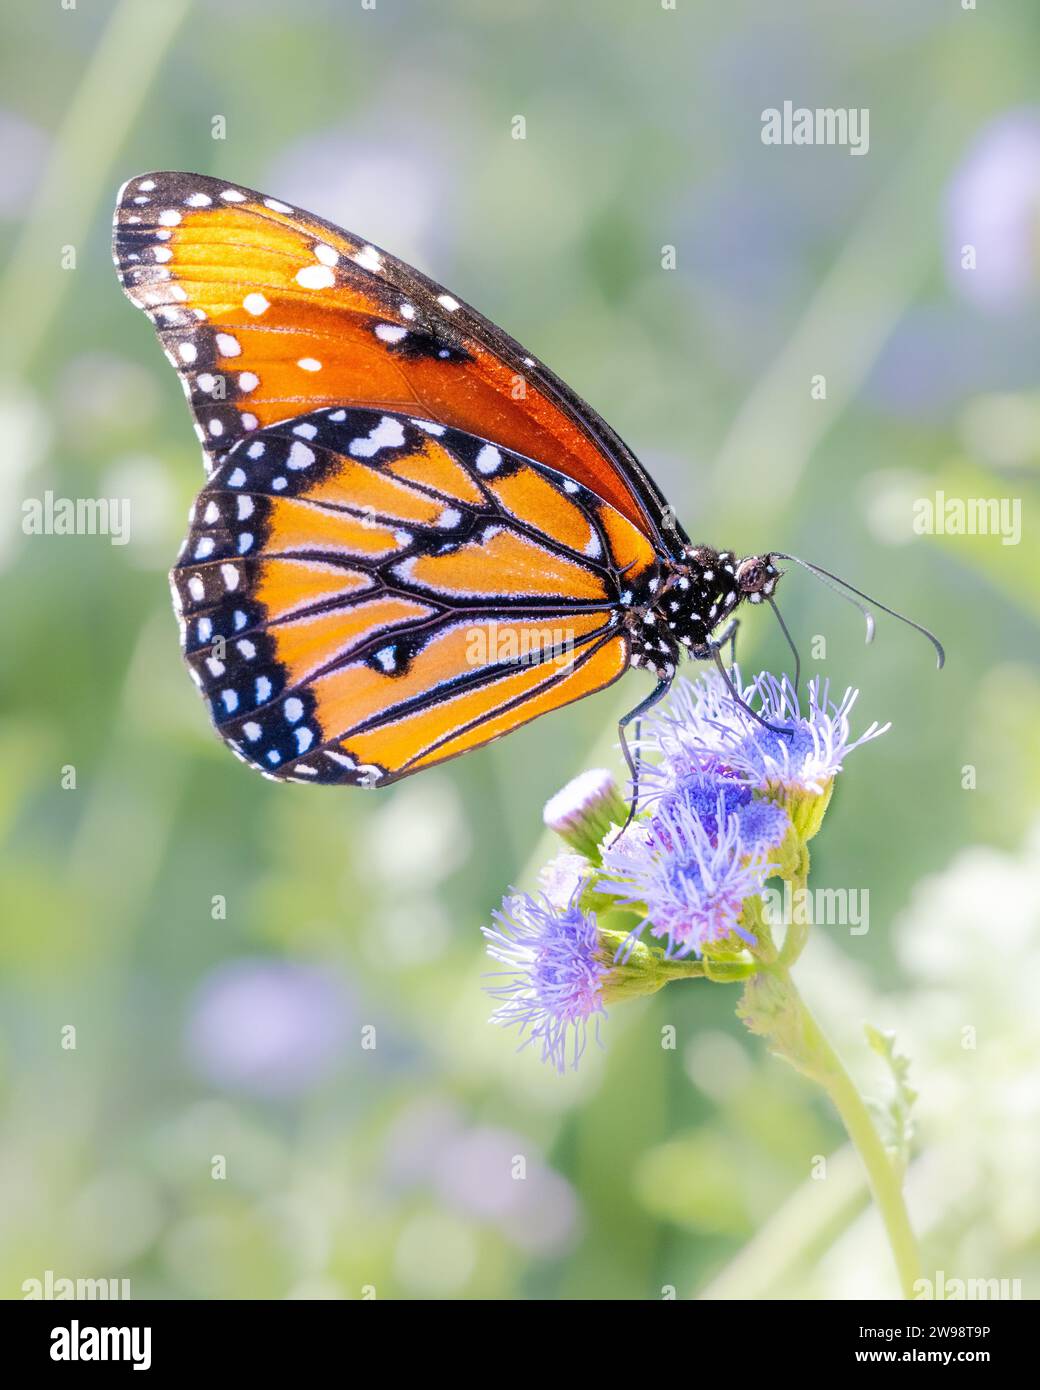 Reine papillon Danaus gilippus se nourrissant de nectar de fleur de jardin - Müllerian co-imite orange monarque aka mimique insecte - proboscis détail d'aile étendue Banque D'Images